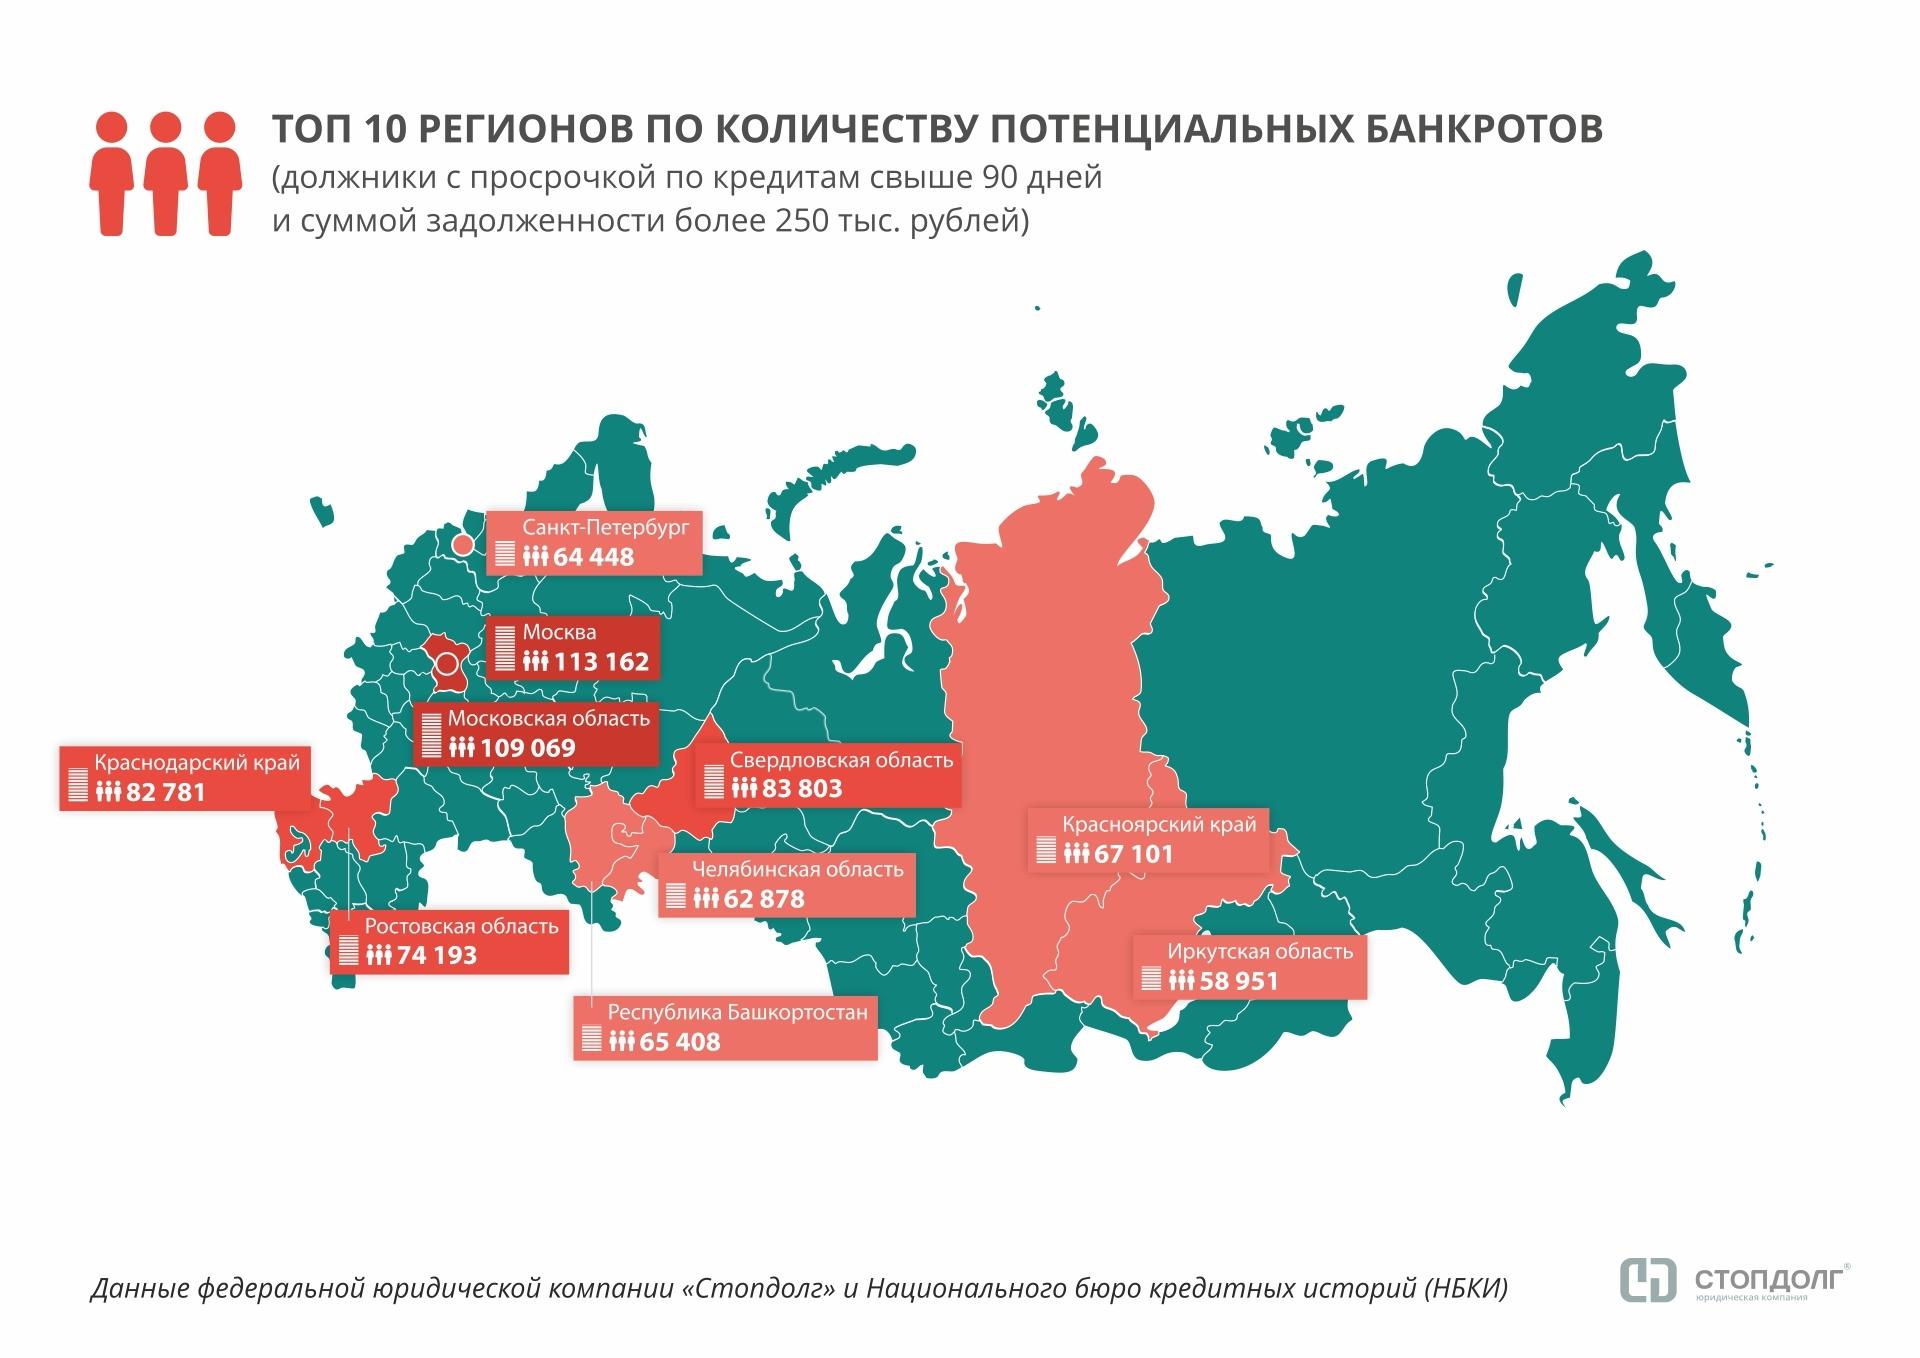 Стопдолг: в России стало больше «финансовых зомби» - рис.1